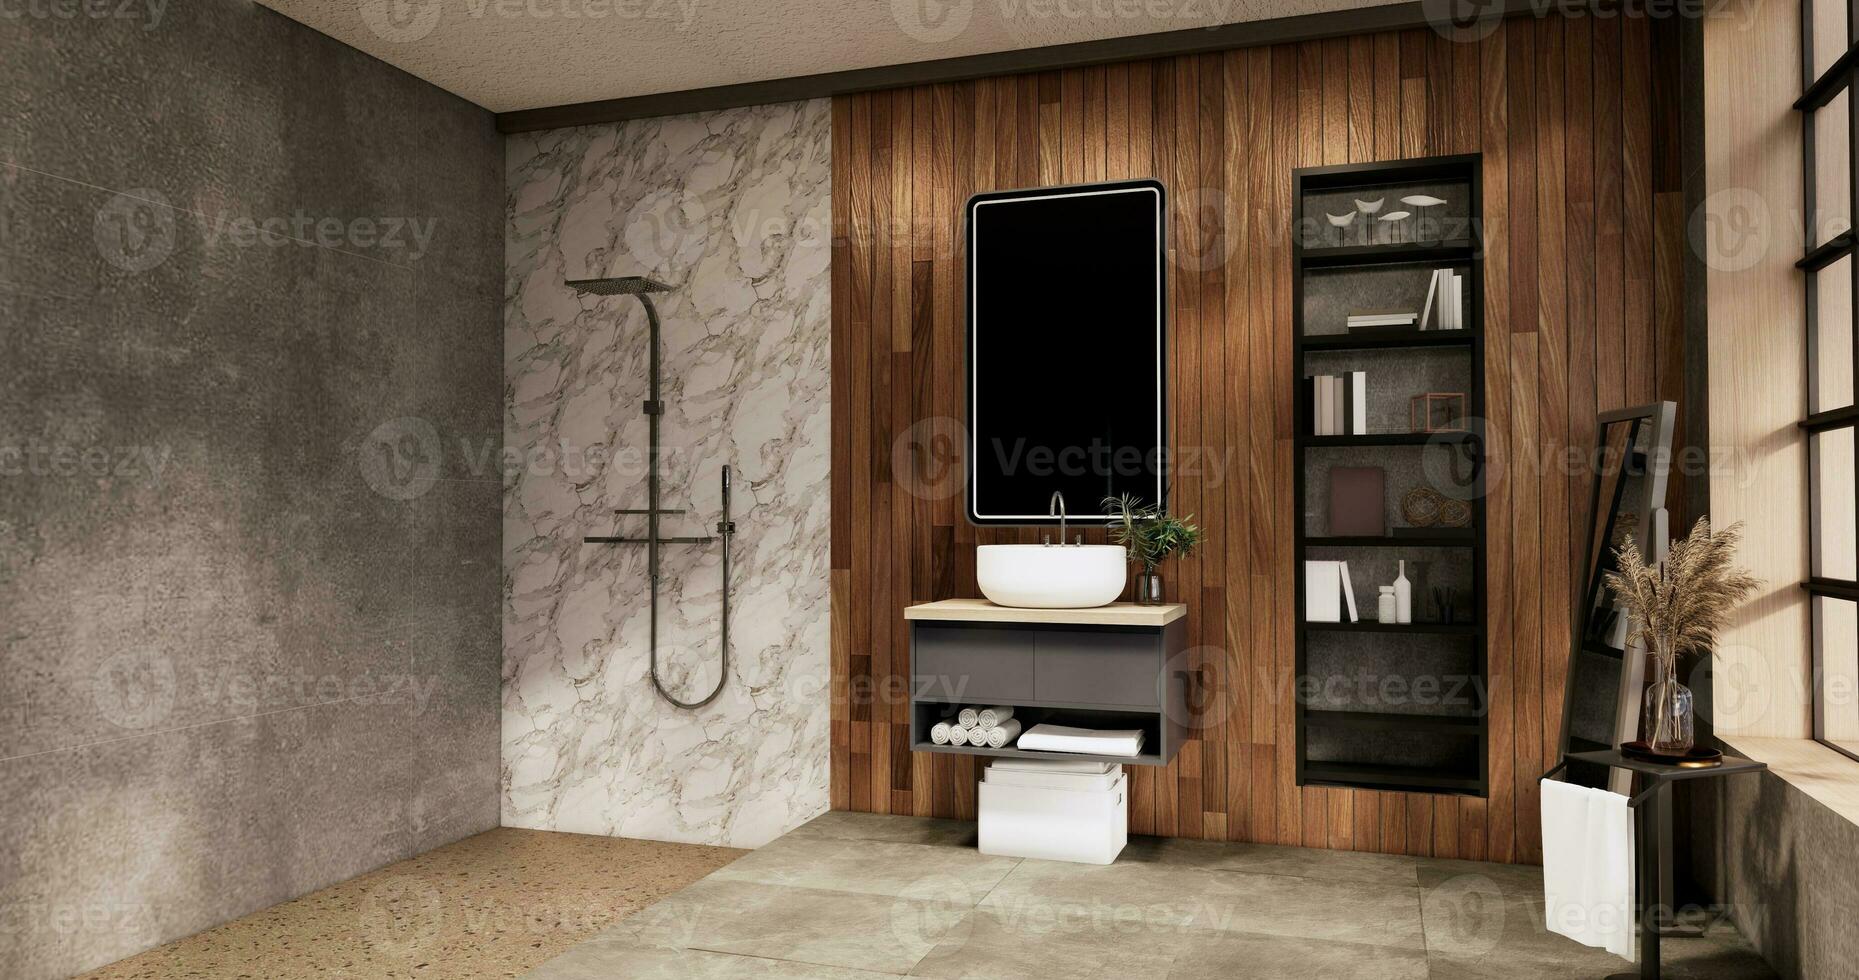 de bad och toalett på badrum japansk wabi sabi stil .3d tolkning foto